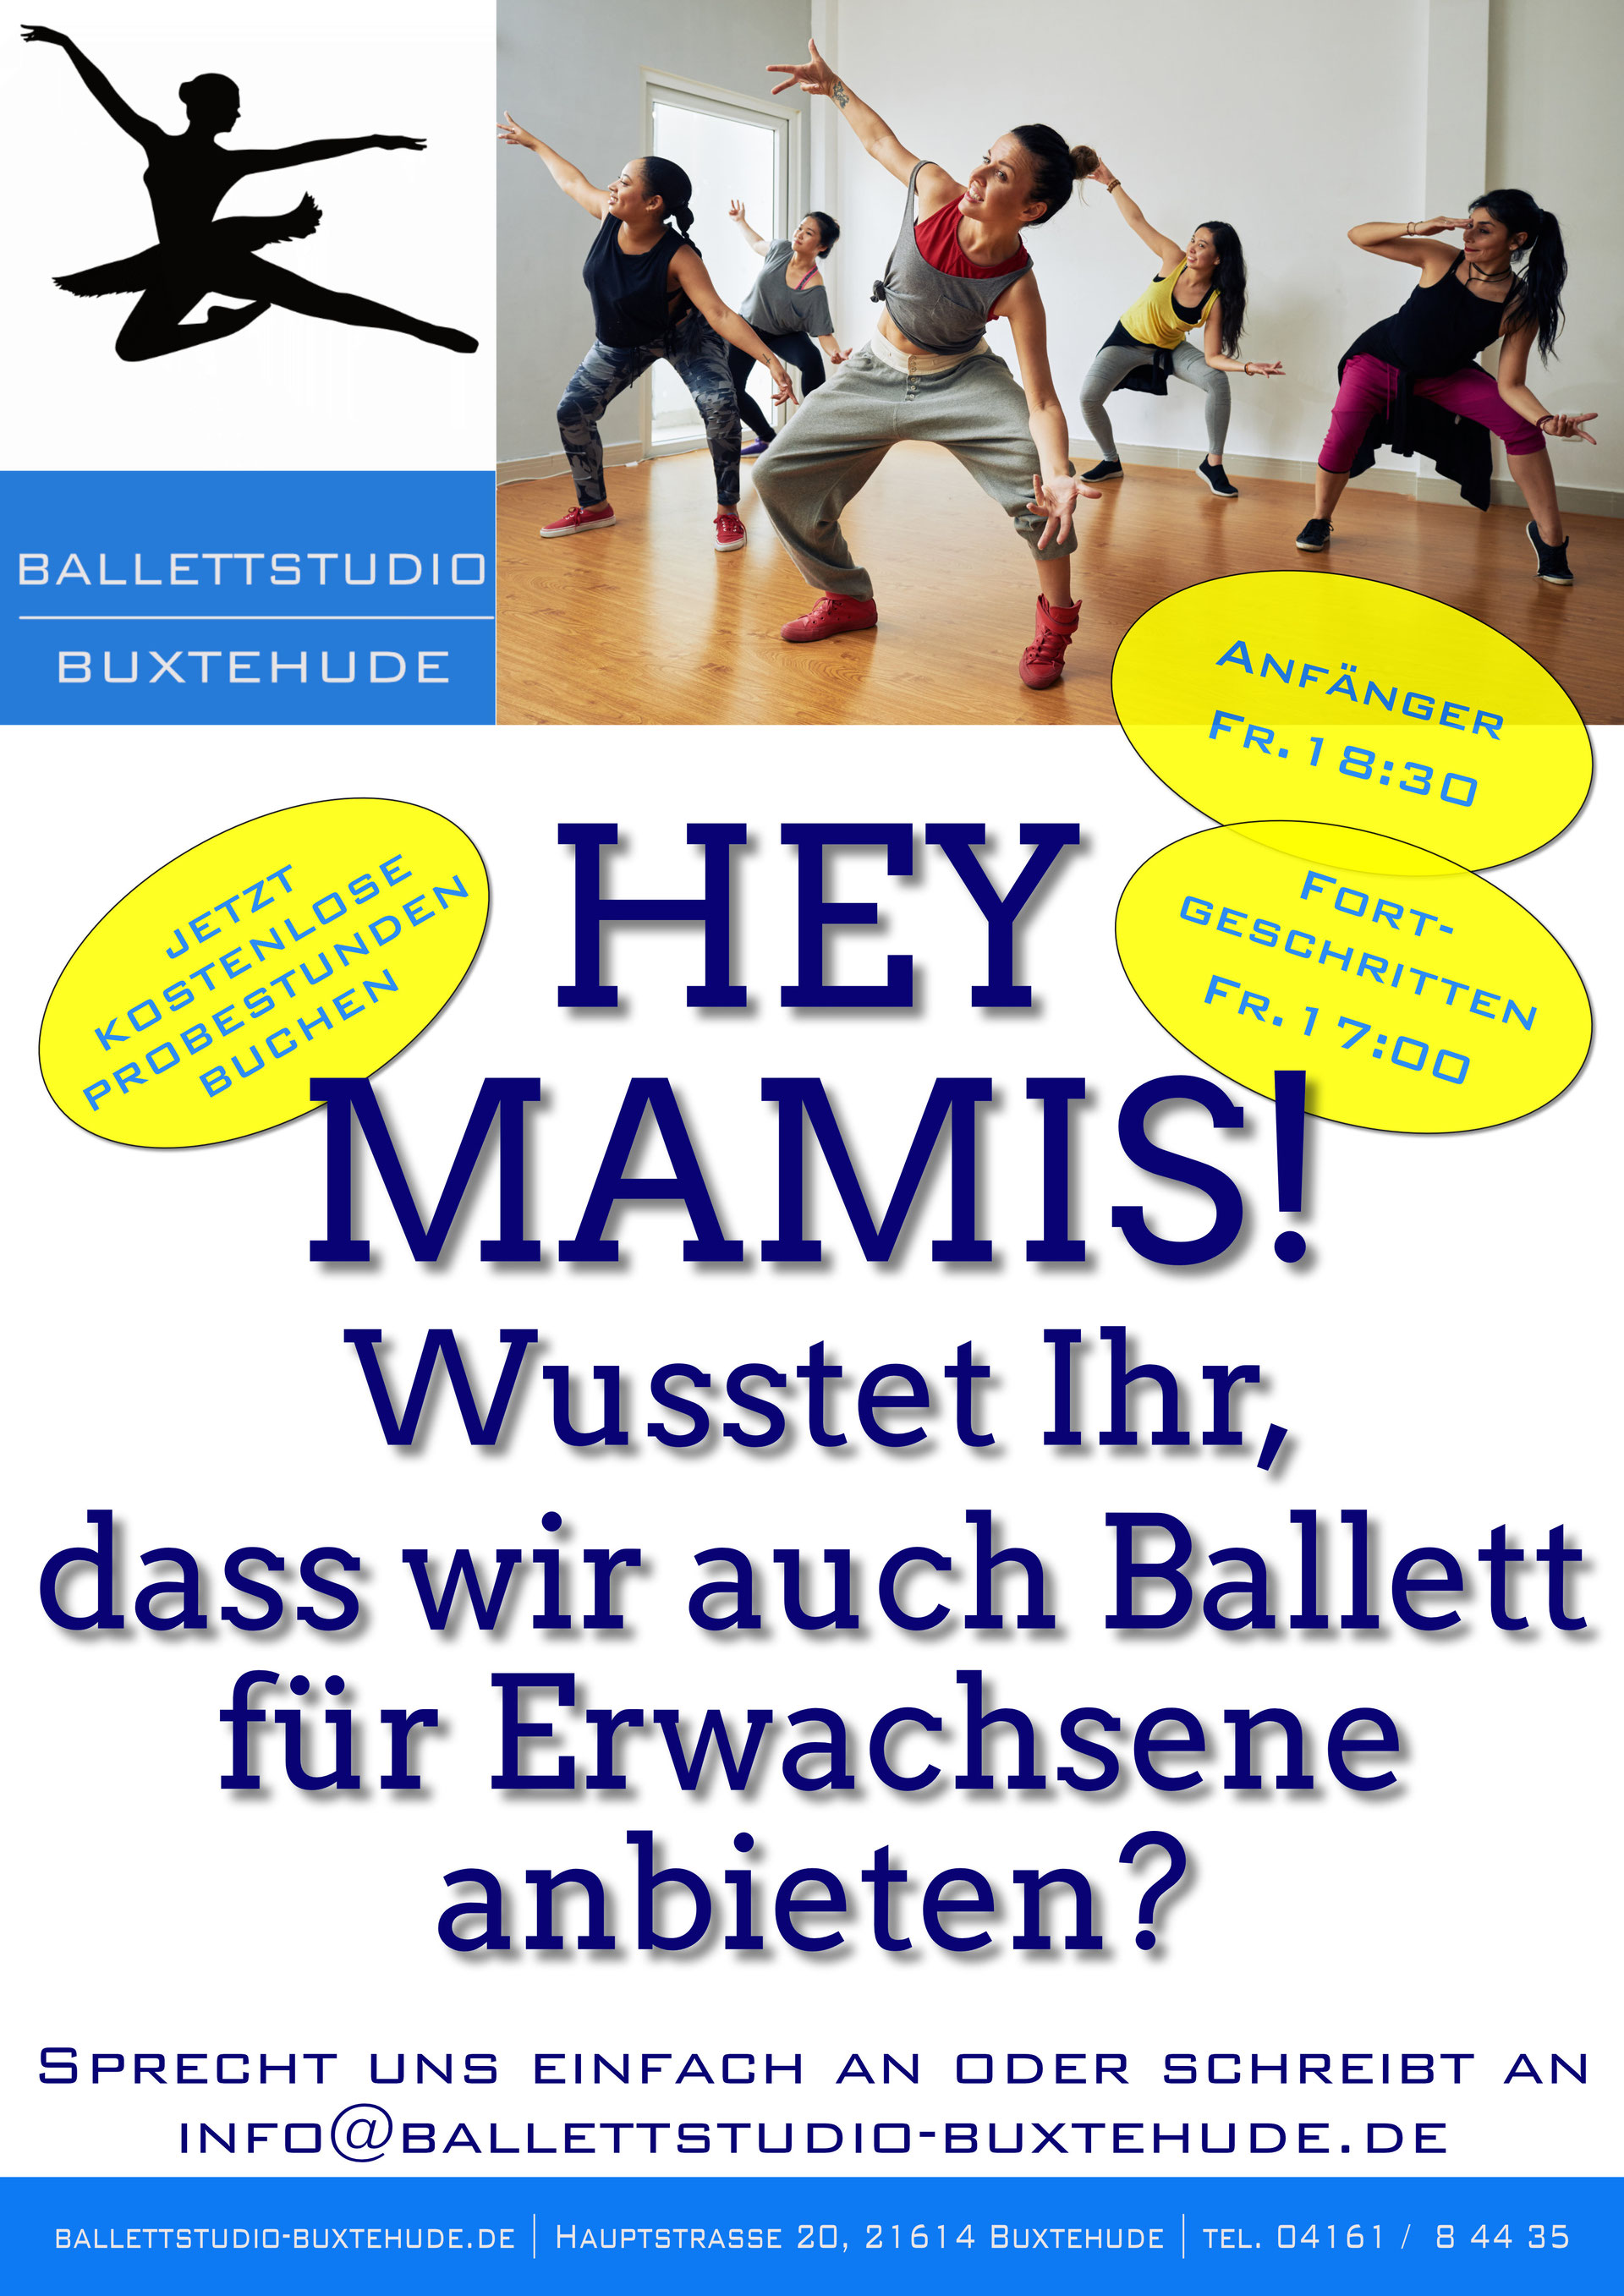 (c) Ballettstudio-buxtehude.de